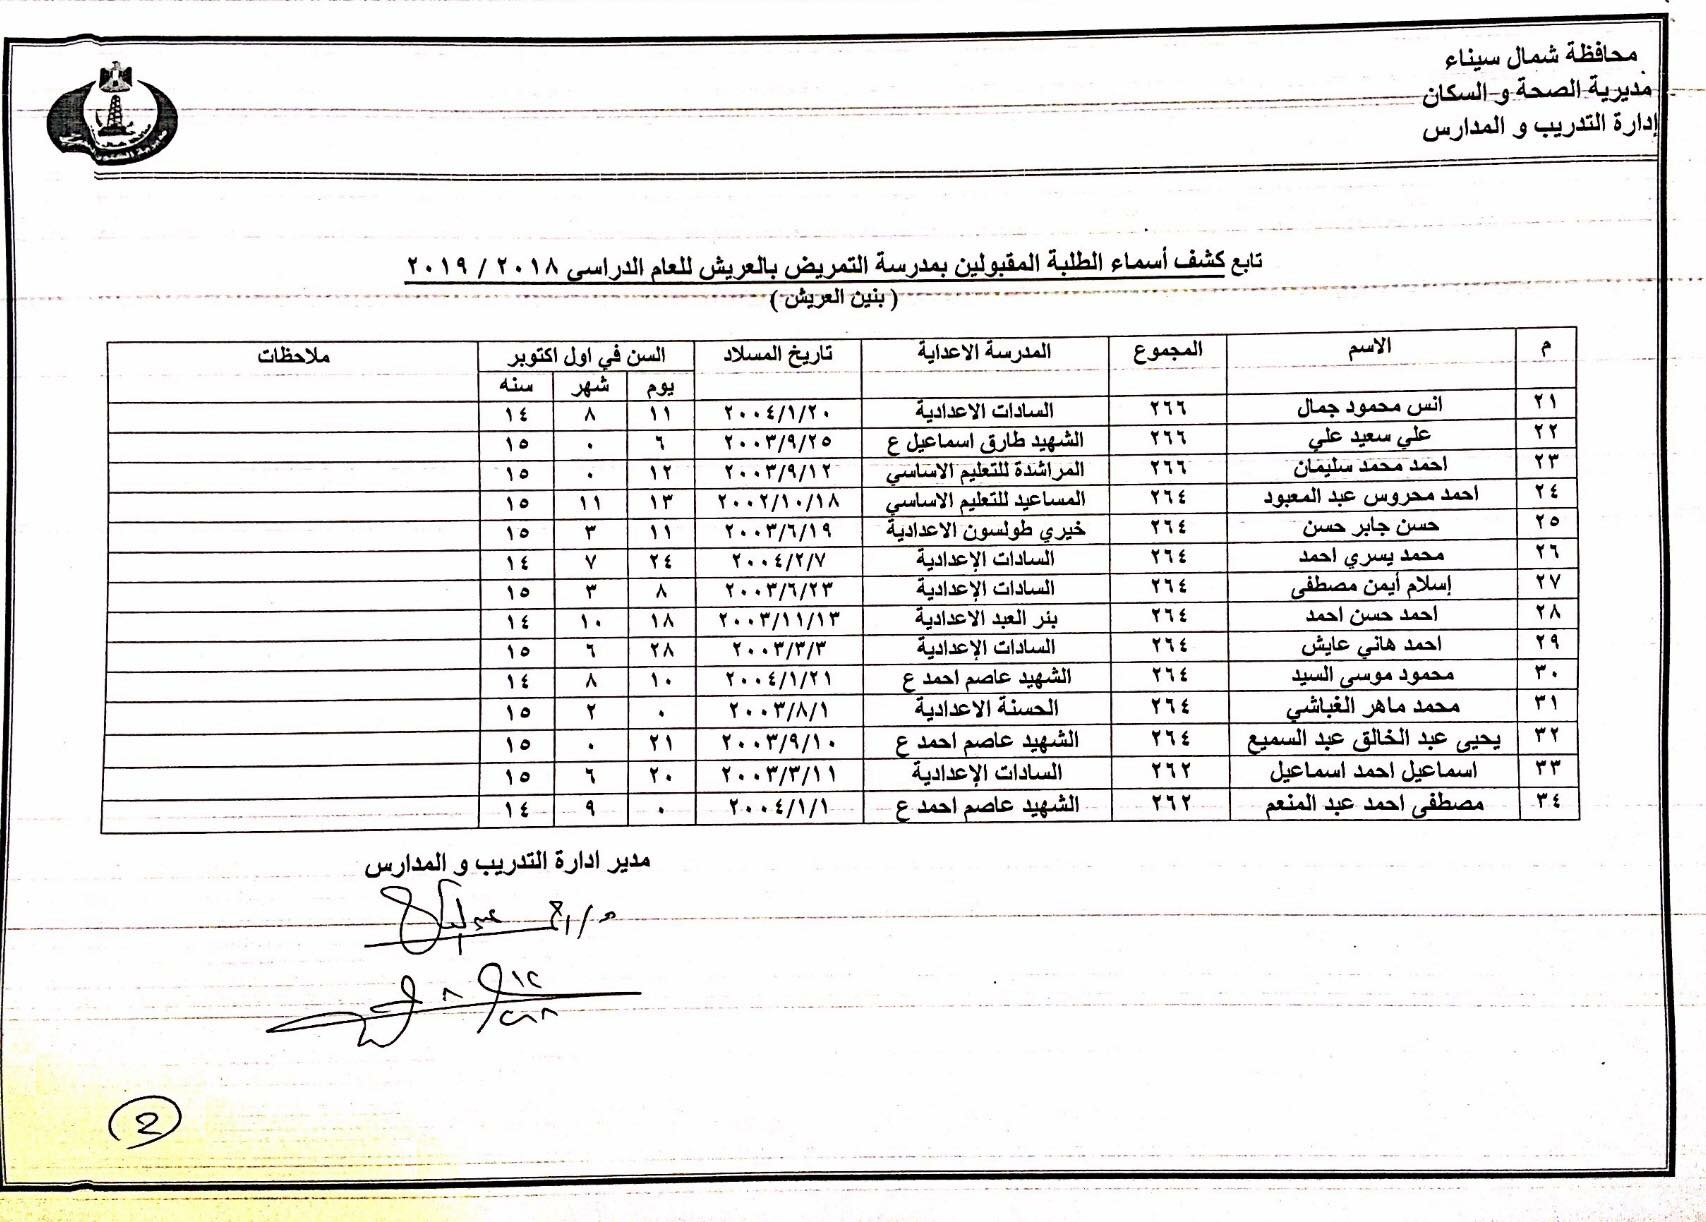 أسماء المقبولين بمدارس التمريض بشمال سيناء (2)